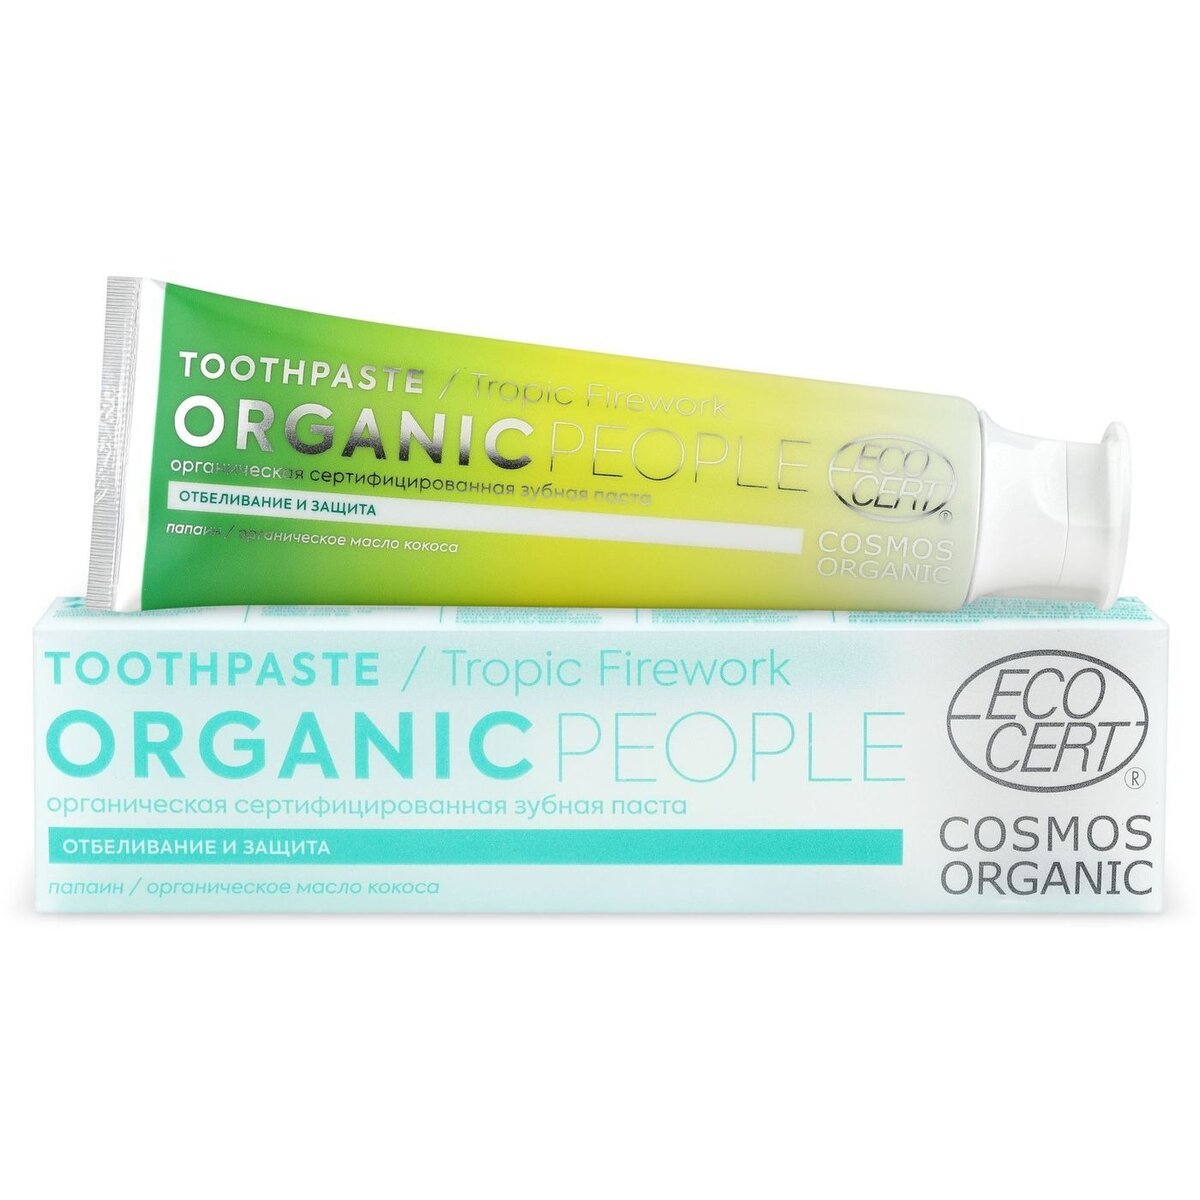 Зубная паста Organic people tropic firework органическая сертифицированная 85 г